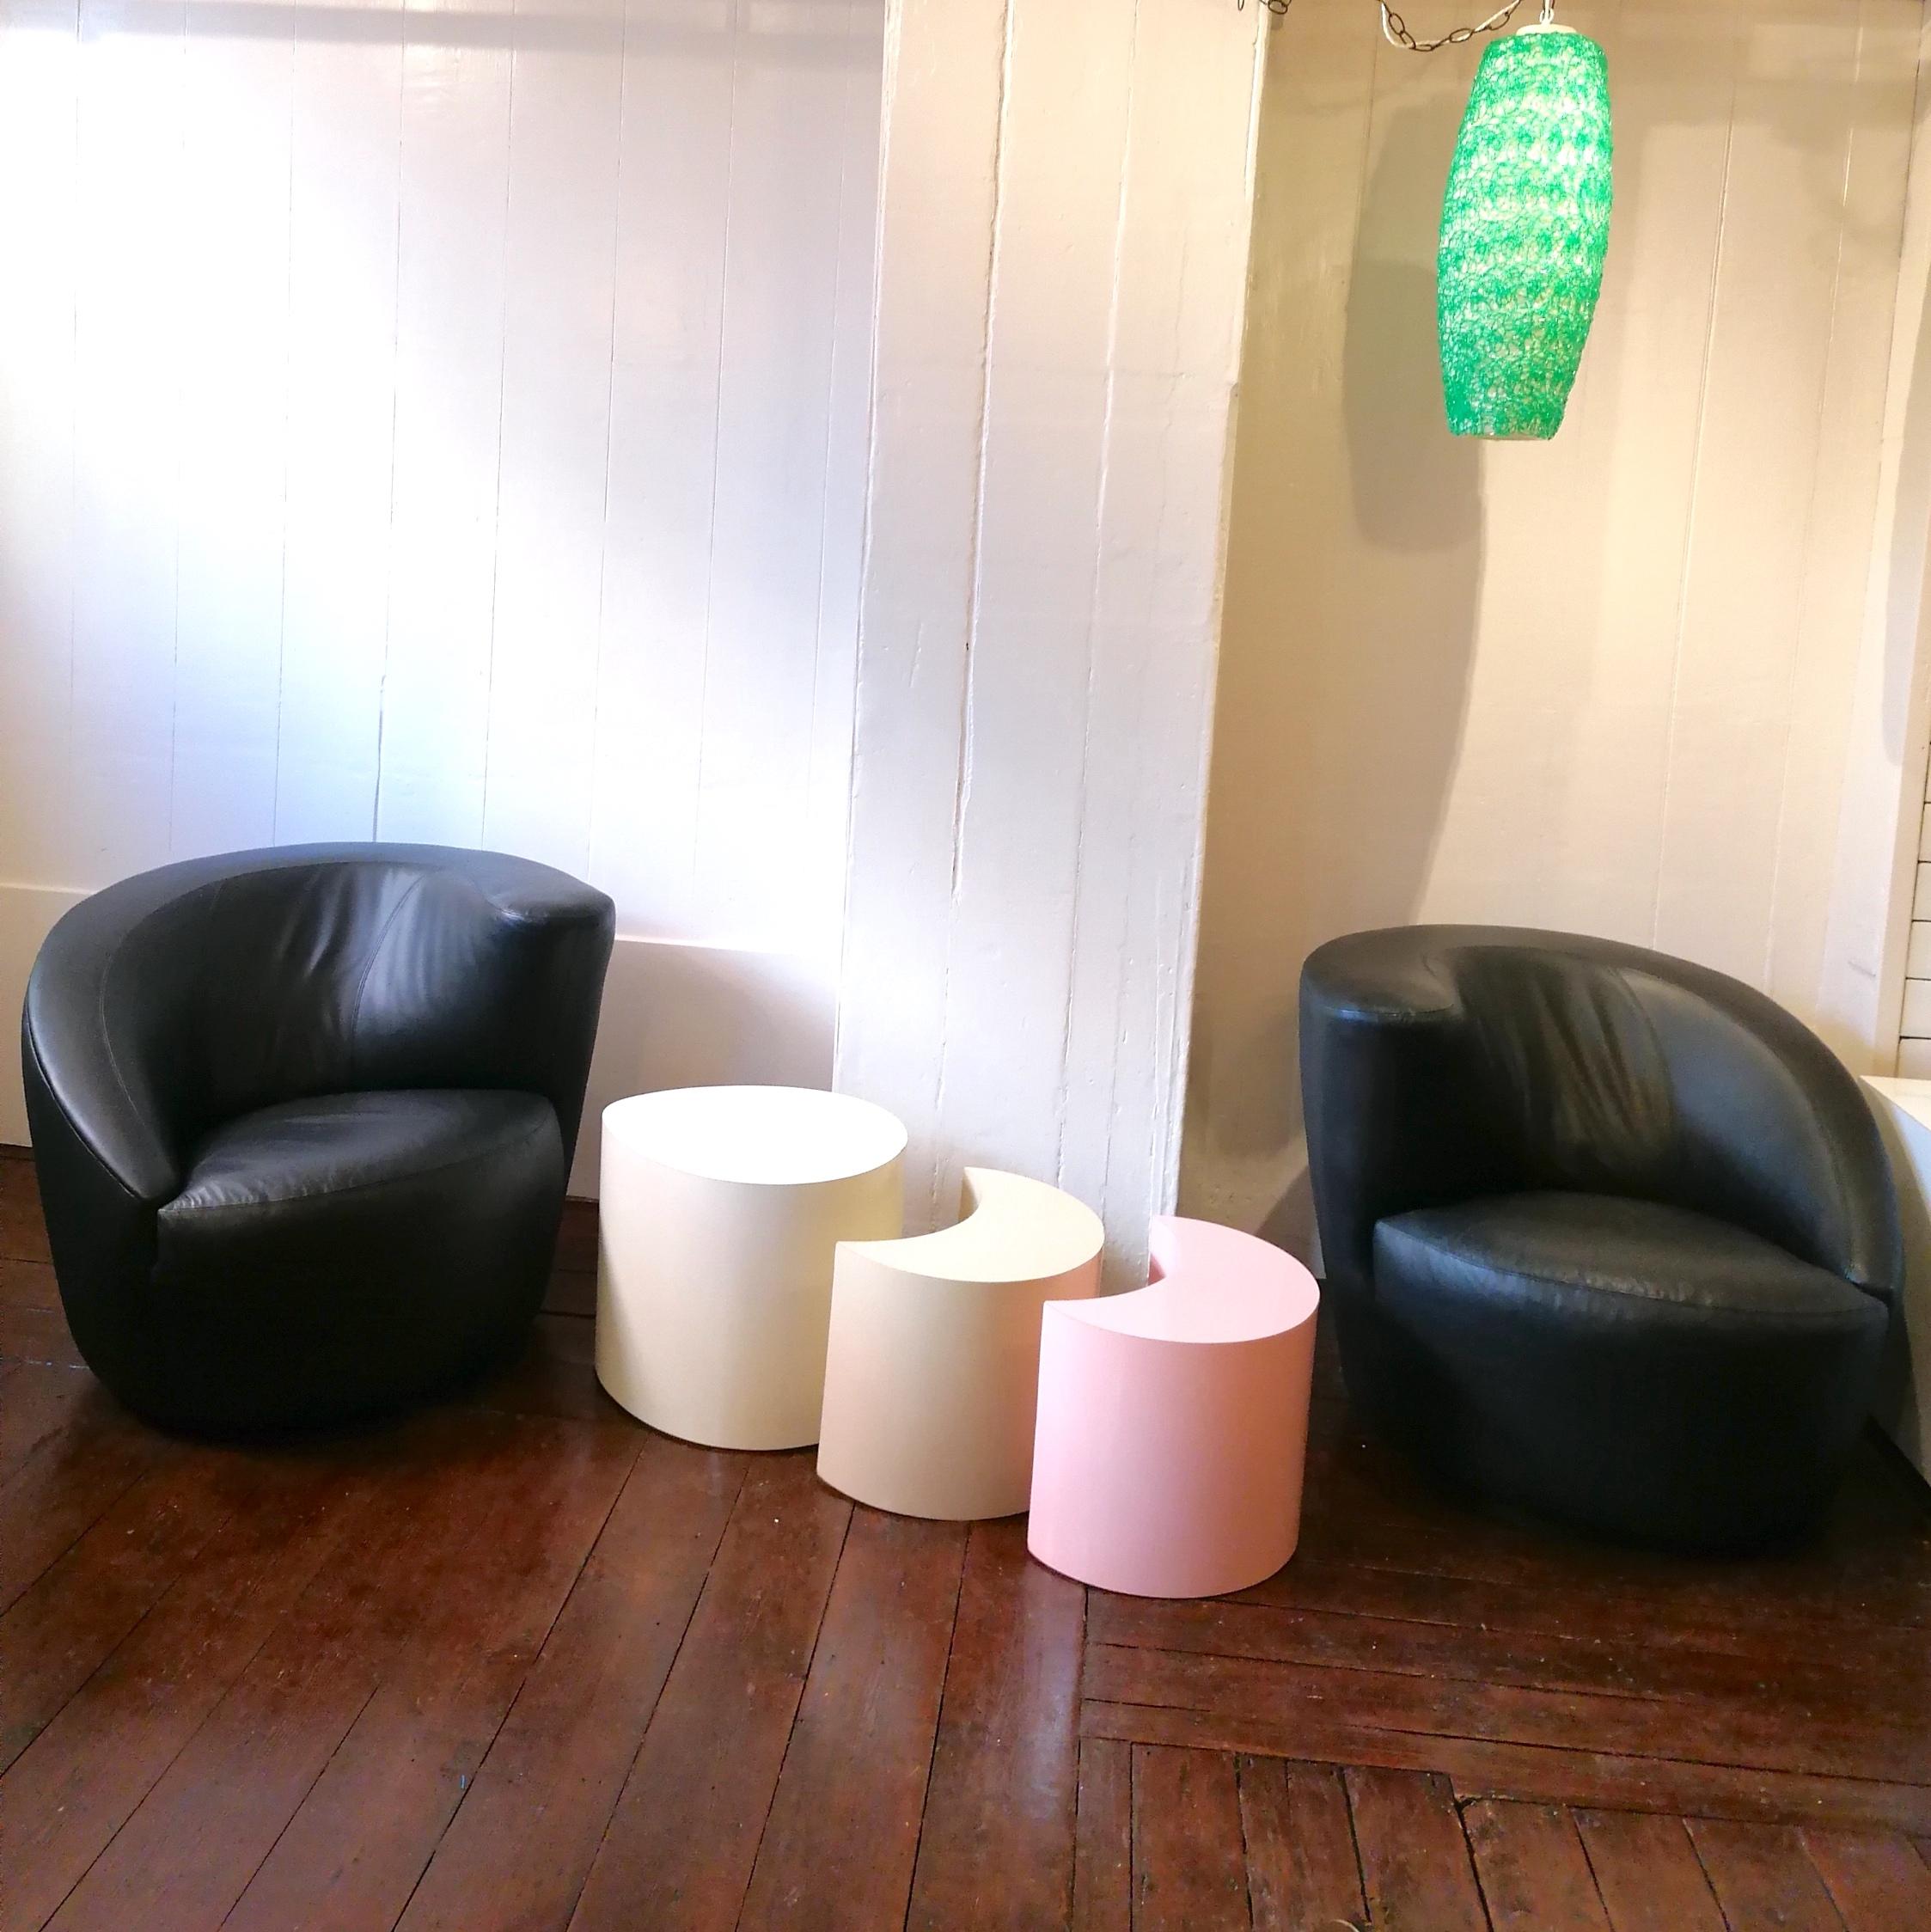 Ein seltenes Paar Vladimir Kagan 'Nautilus' Lounge Chairs, in original schwarzem Leder. Entworfen für Directional USA (vollständig etikettiert), 1970er Jahre. Directional ist der einzige Hersteller von authentischen Kagan Nautilus Stühlen.
Die